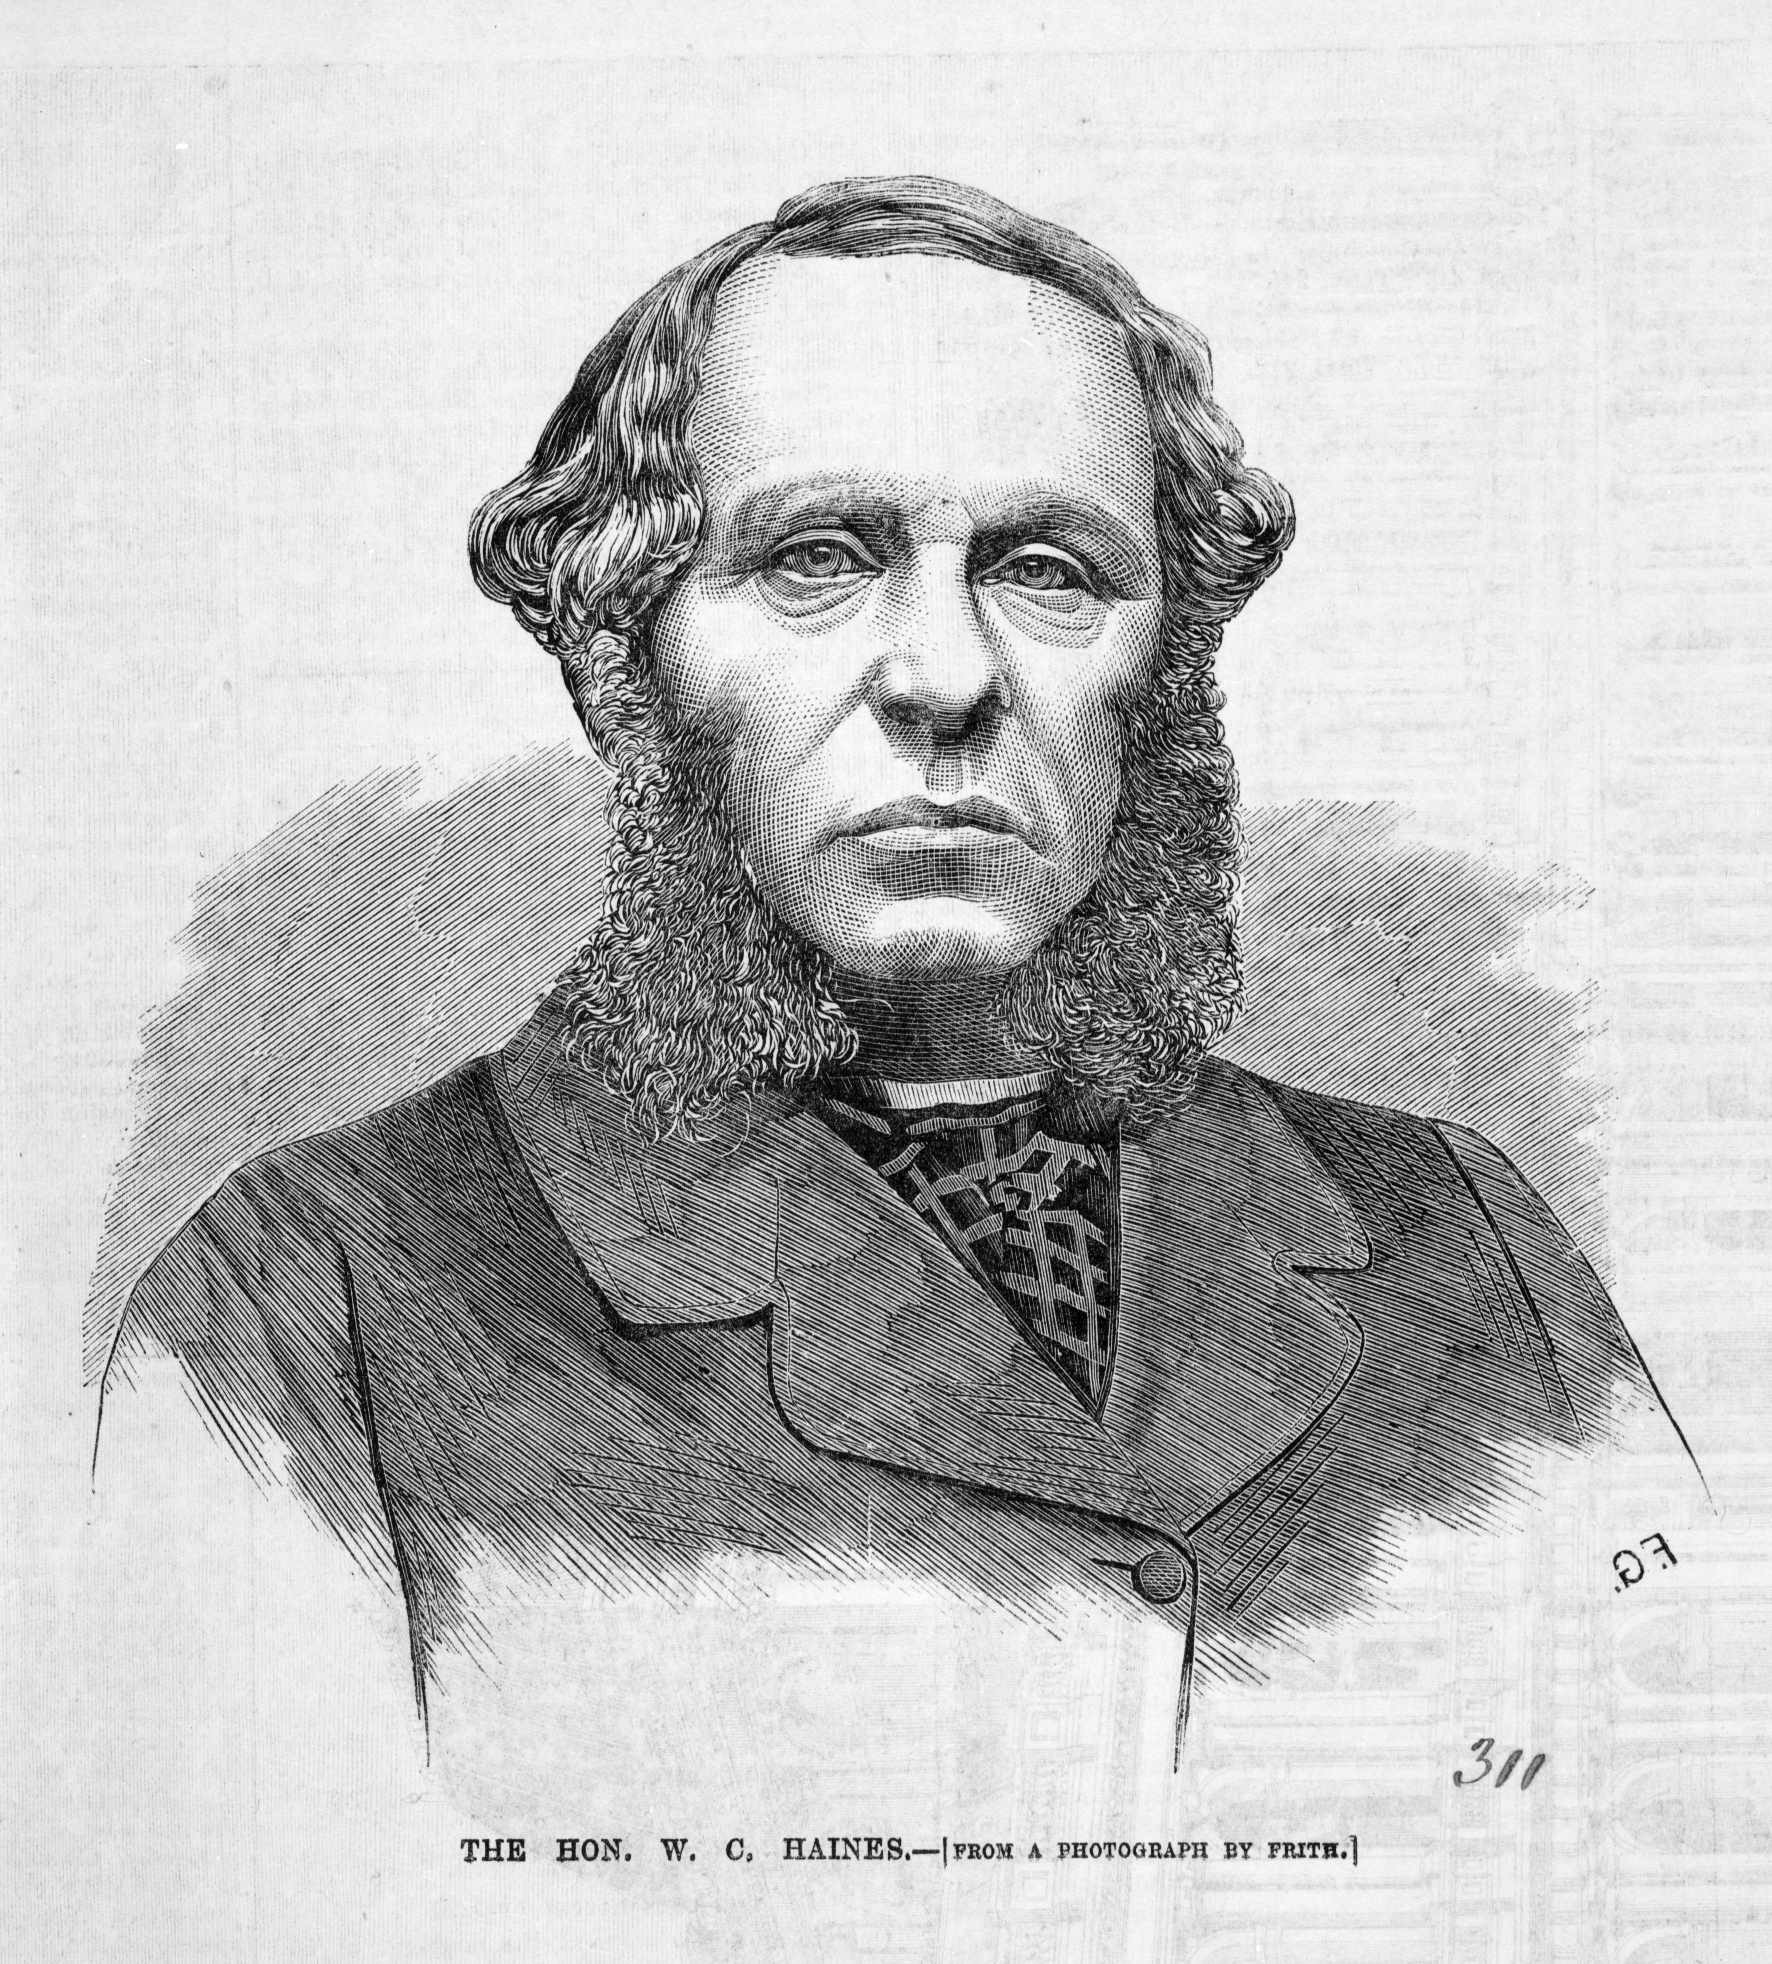 William C. Haines, Premier of Victoria, 1866.